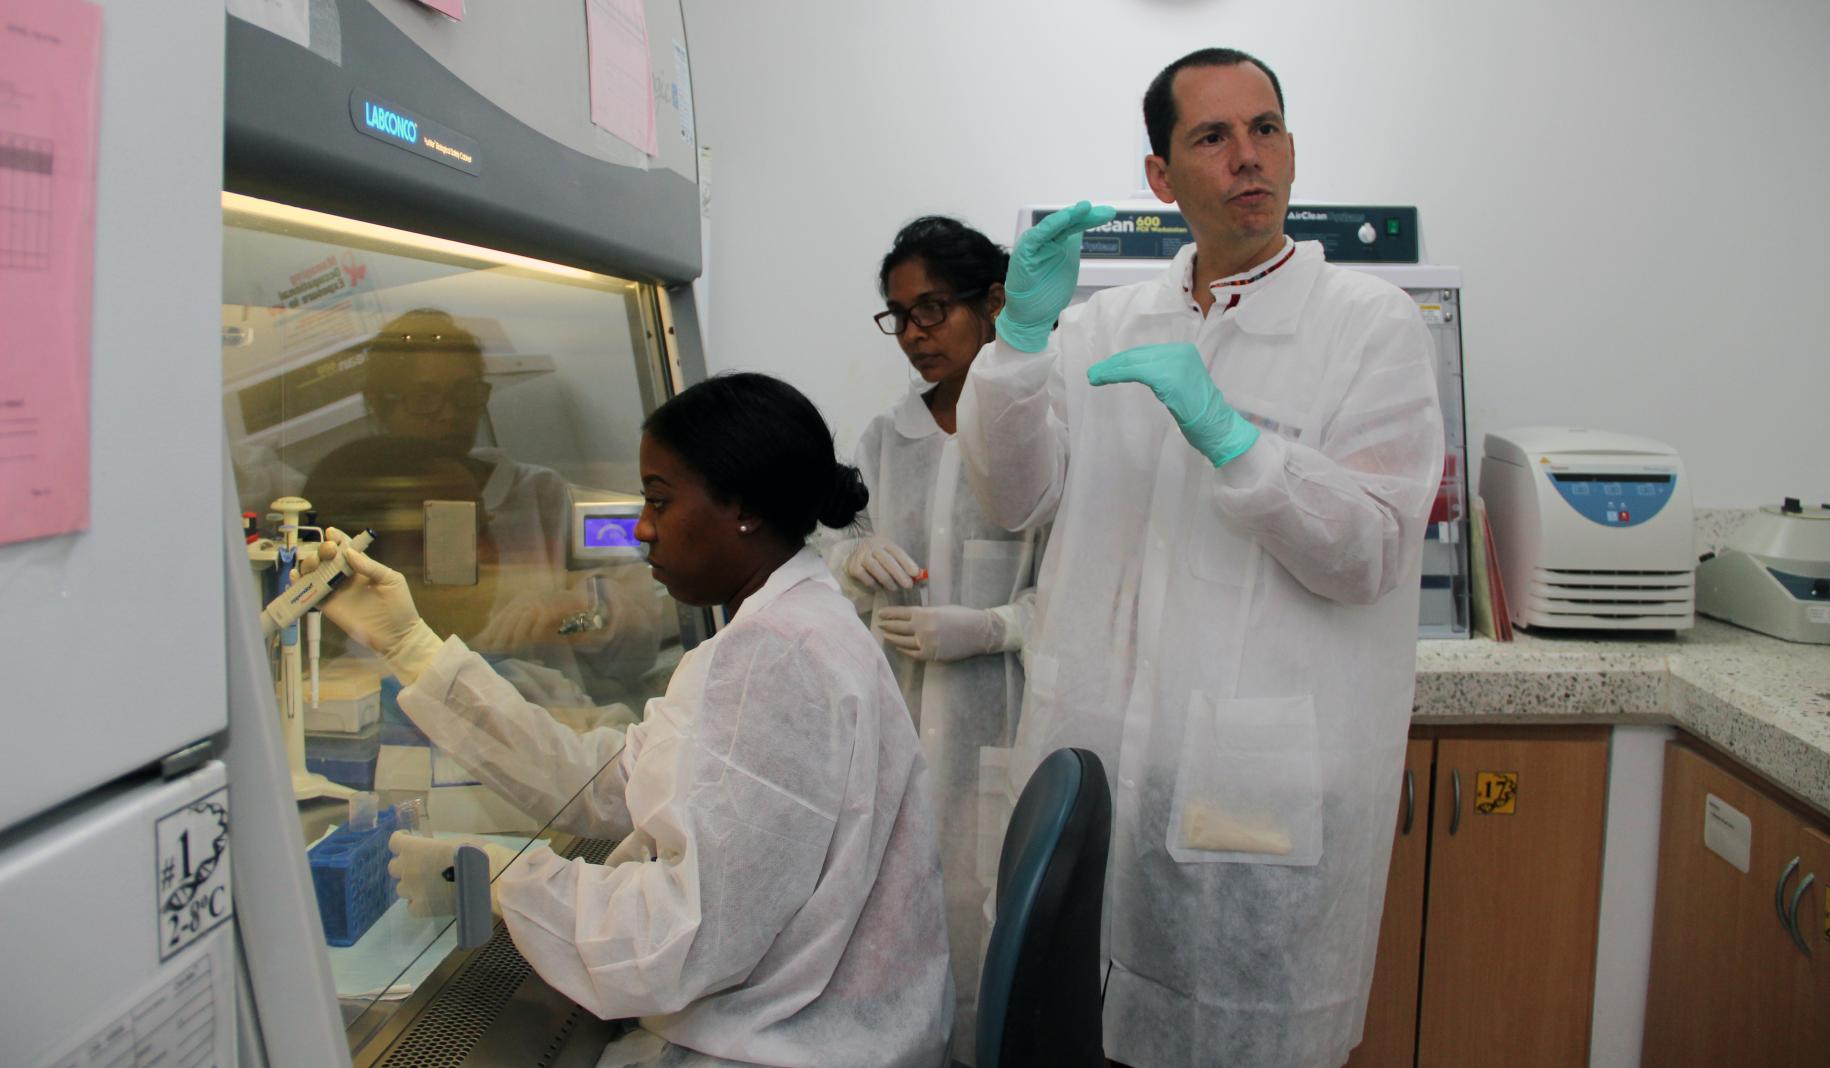 ثلاثة أشخاص في مختبر يرتدون الملابس الواقية.